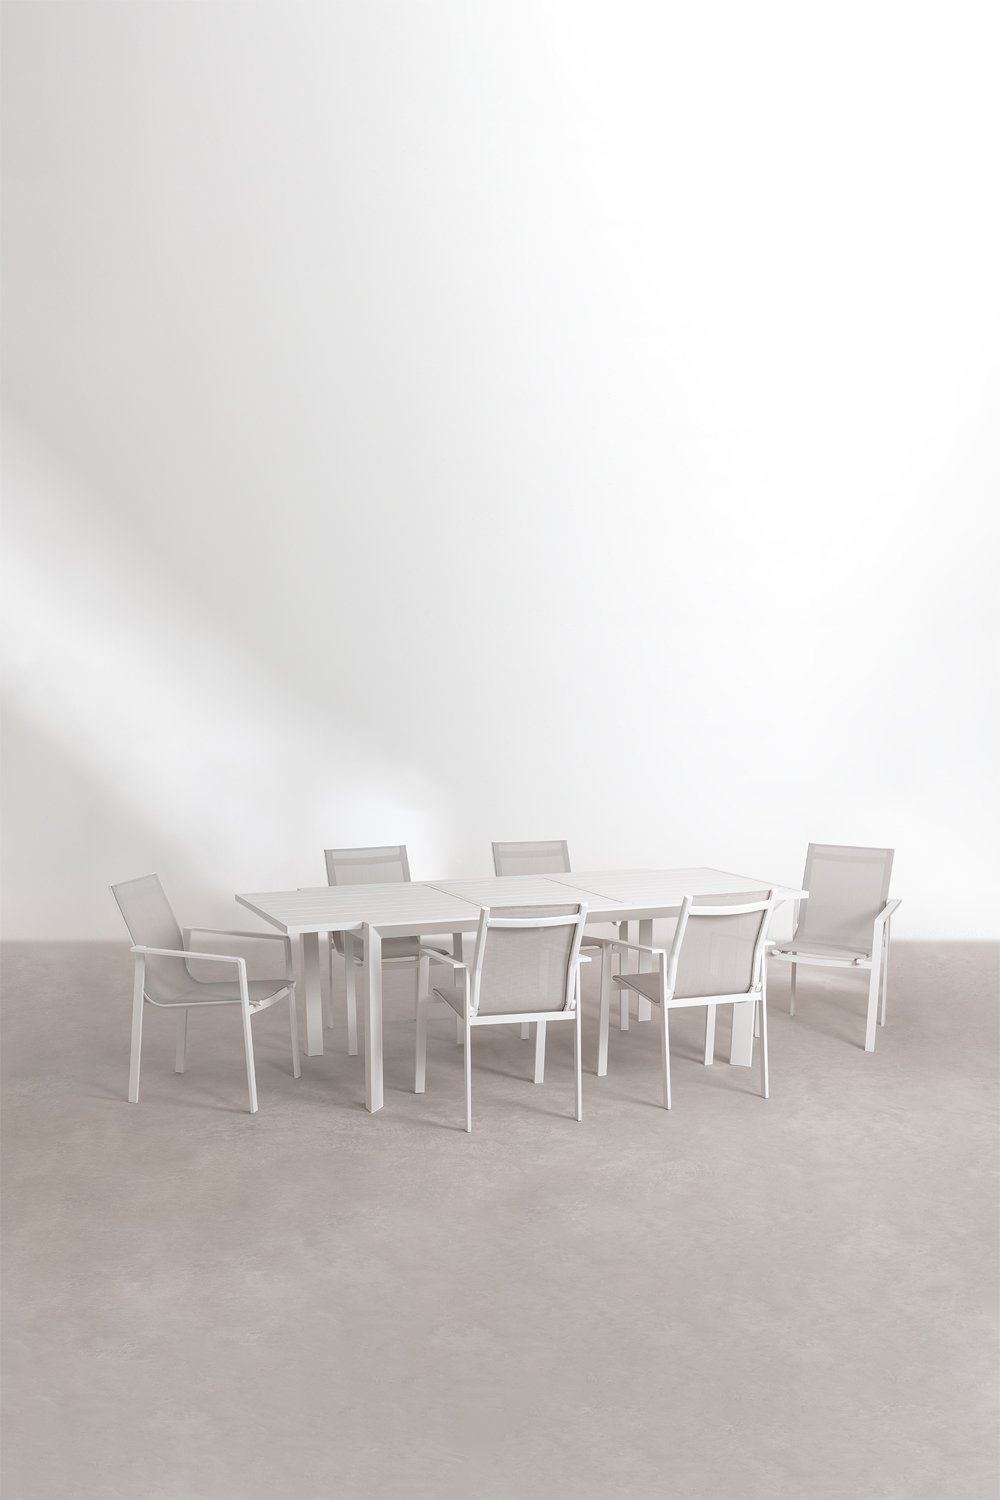  Set Tavolo Rettangolare Allungabile in Alluminio (180-240x100 cm) Starmi e 6 Sedie da Giardino Eika, immagine della galleria 1